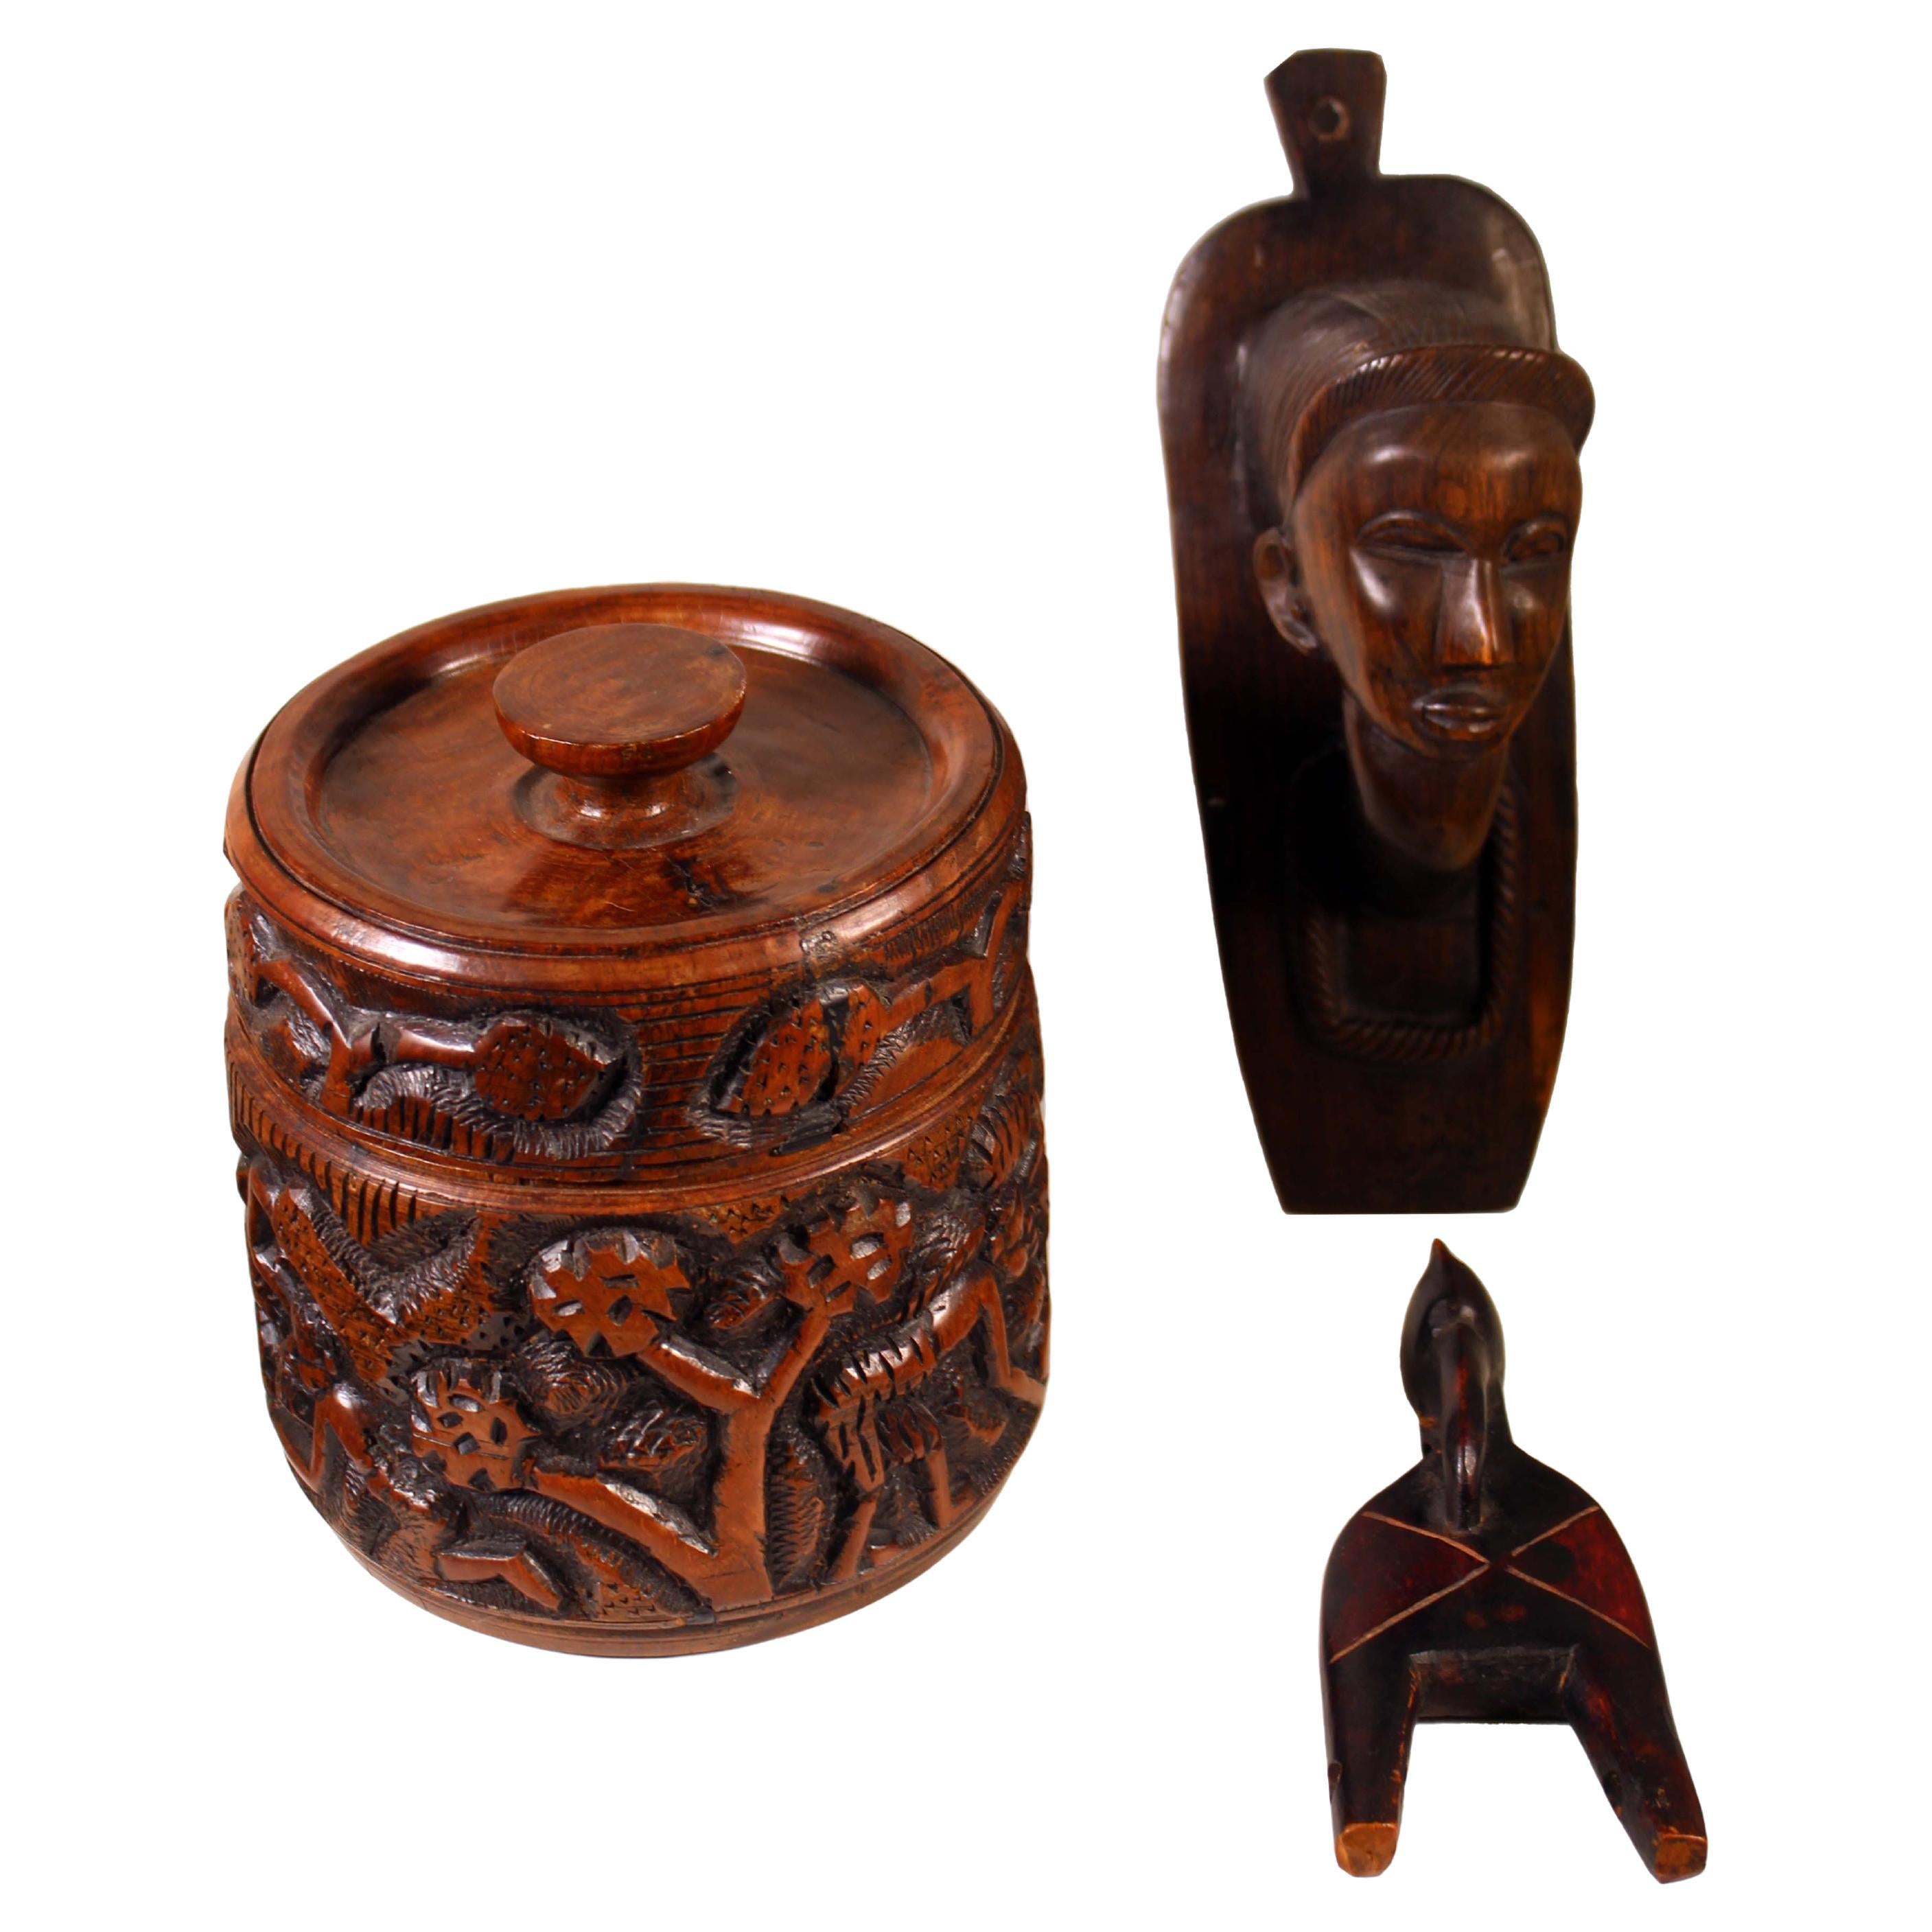 Kollektion afrikanischer Holzschnitzereien, darunter Ebenholzschnitzereien aus Malawien